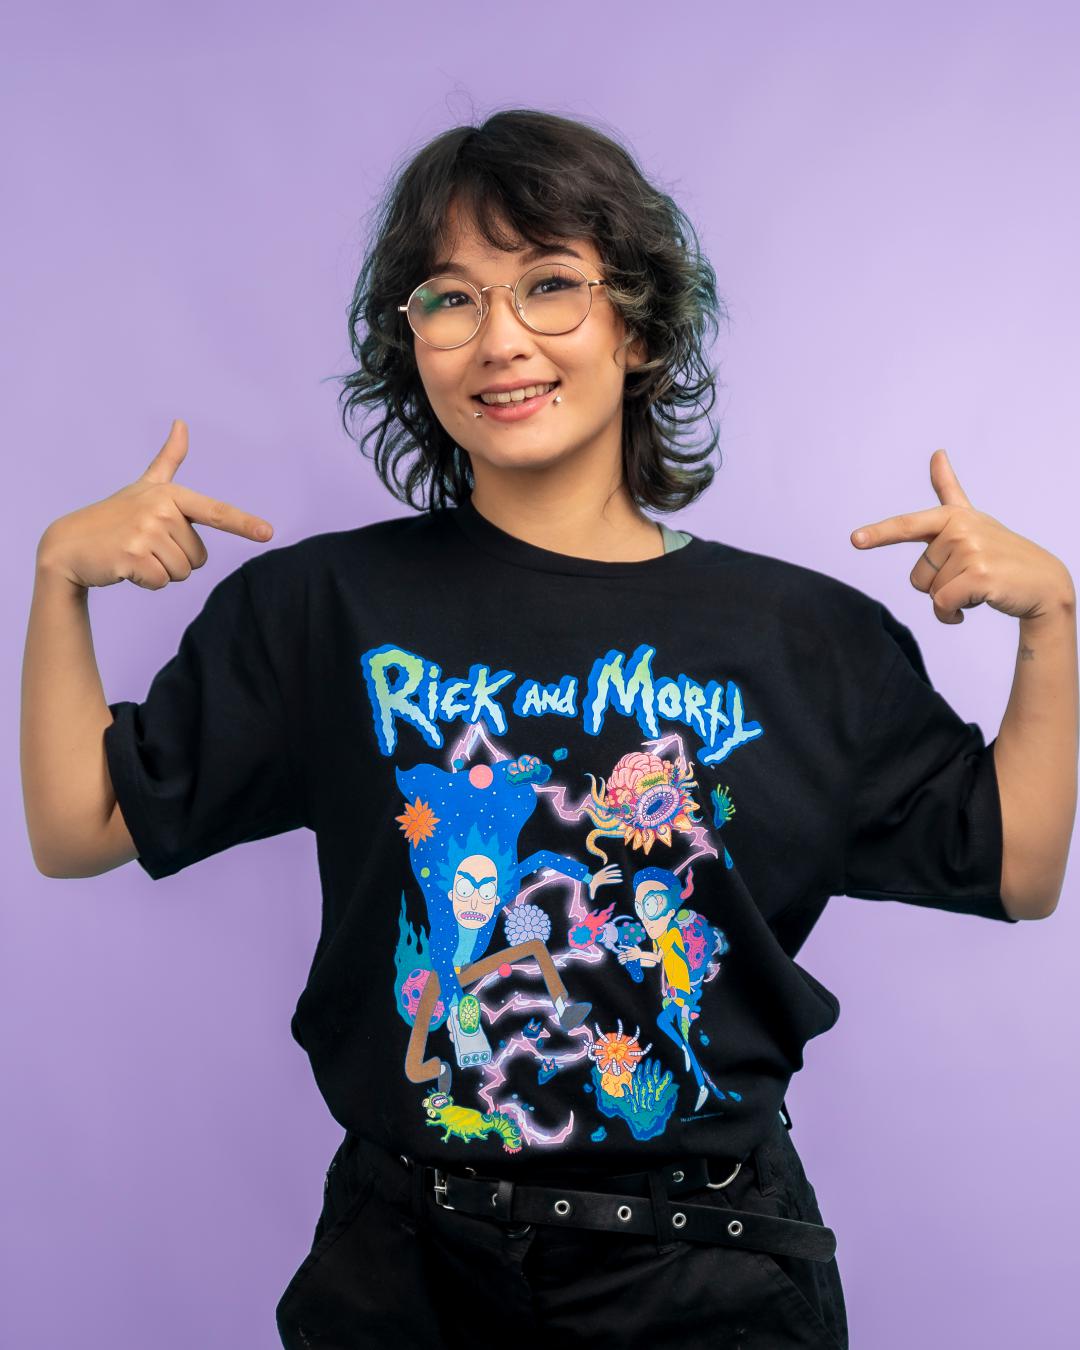 Rick and Morty Creatures T-Shirt Australia Online #colour_black